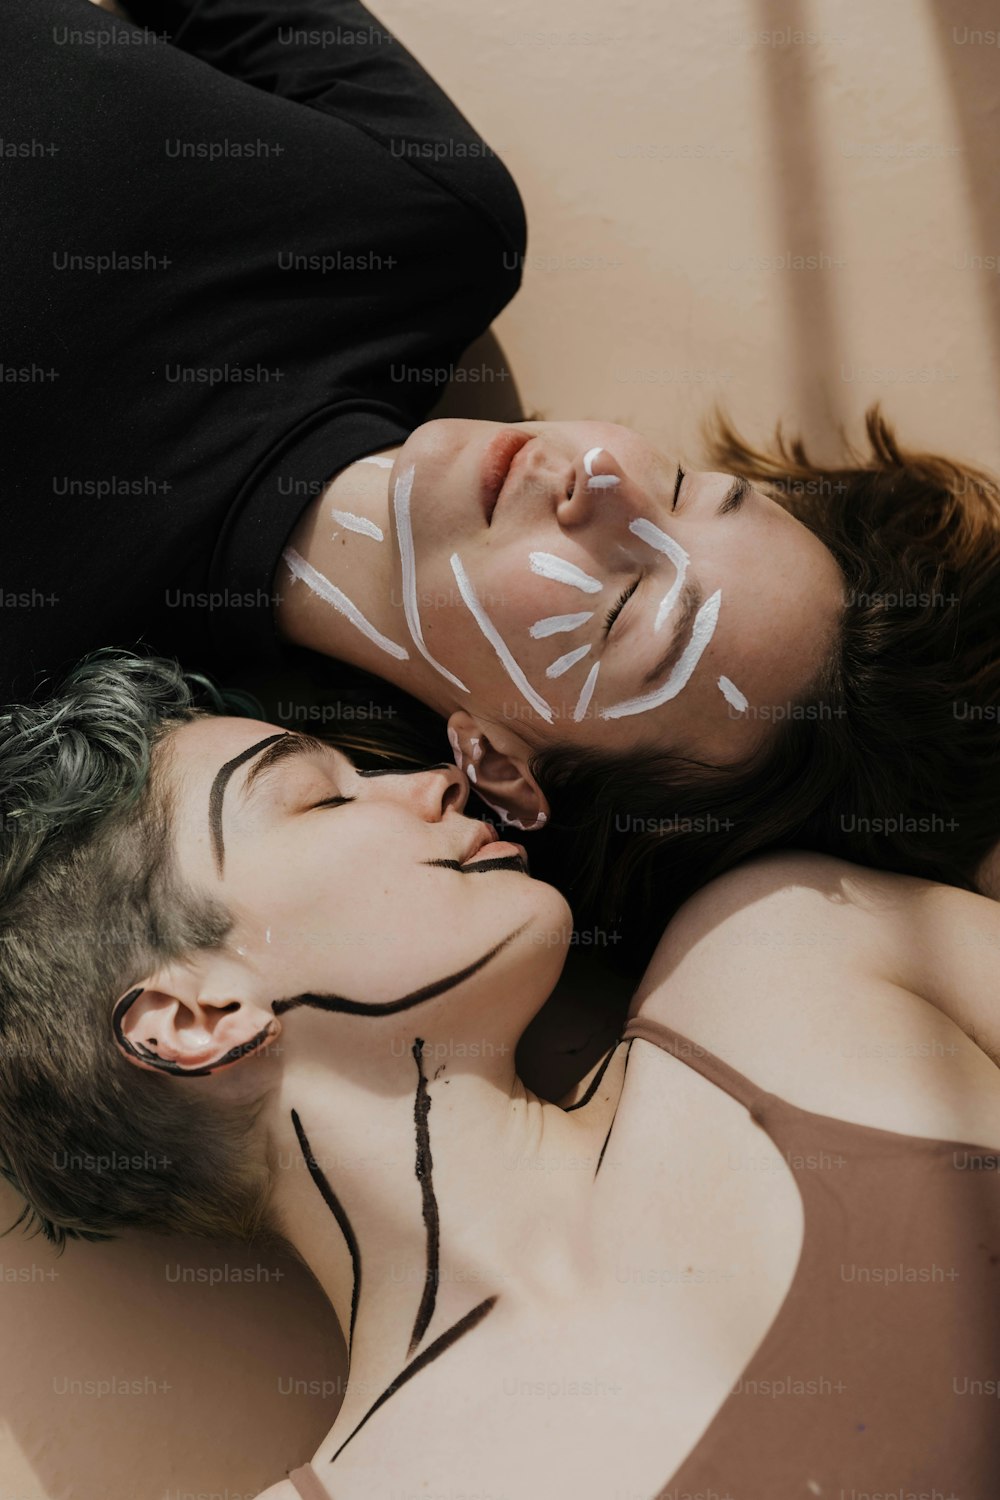 얼굴을 칠한 채 땅에 누워 있는 남자와 여자